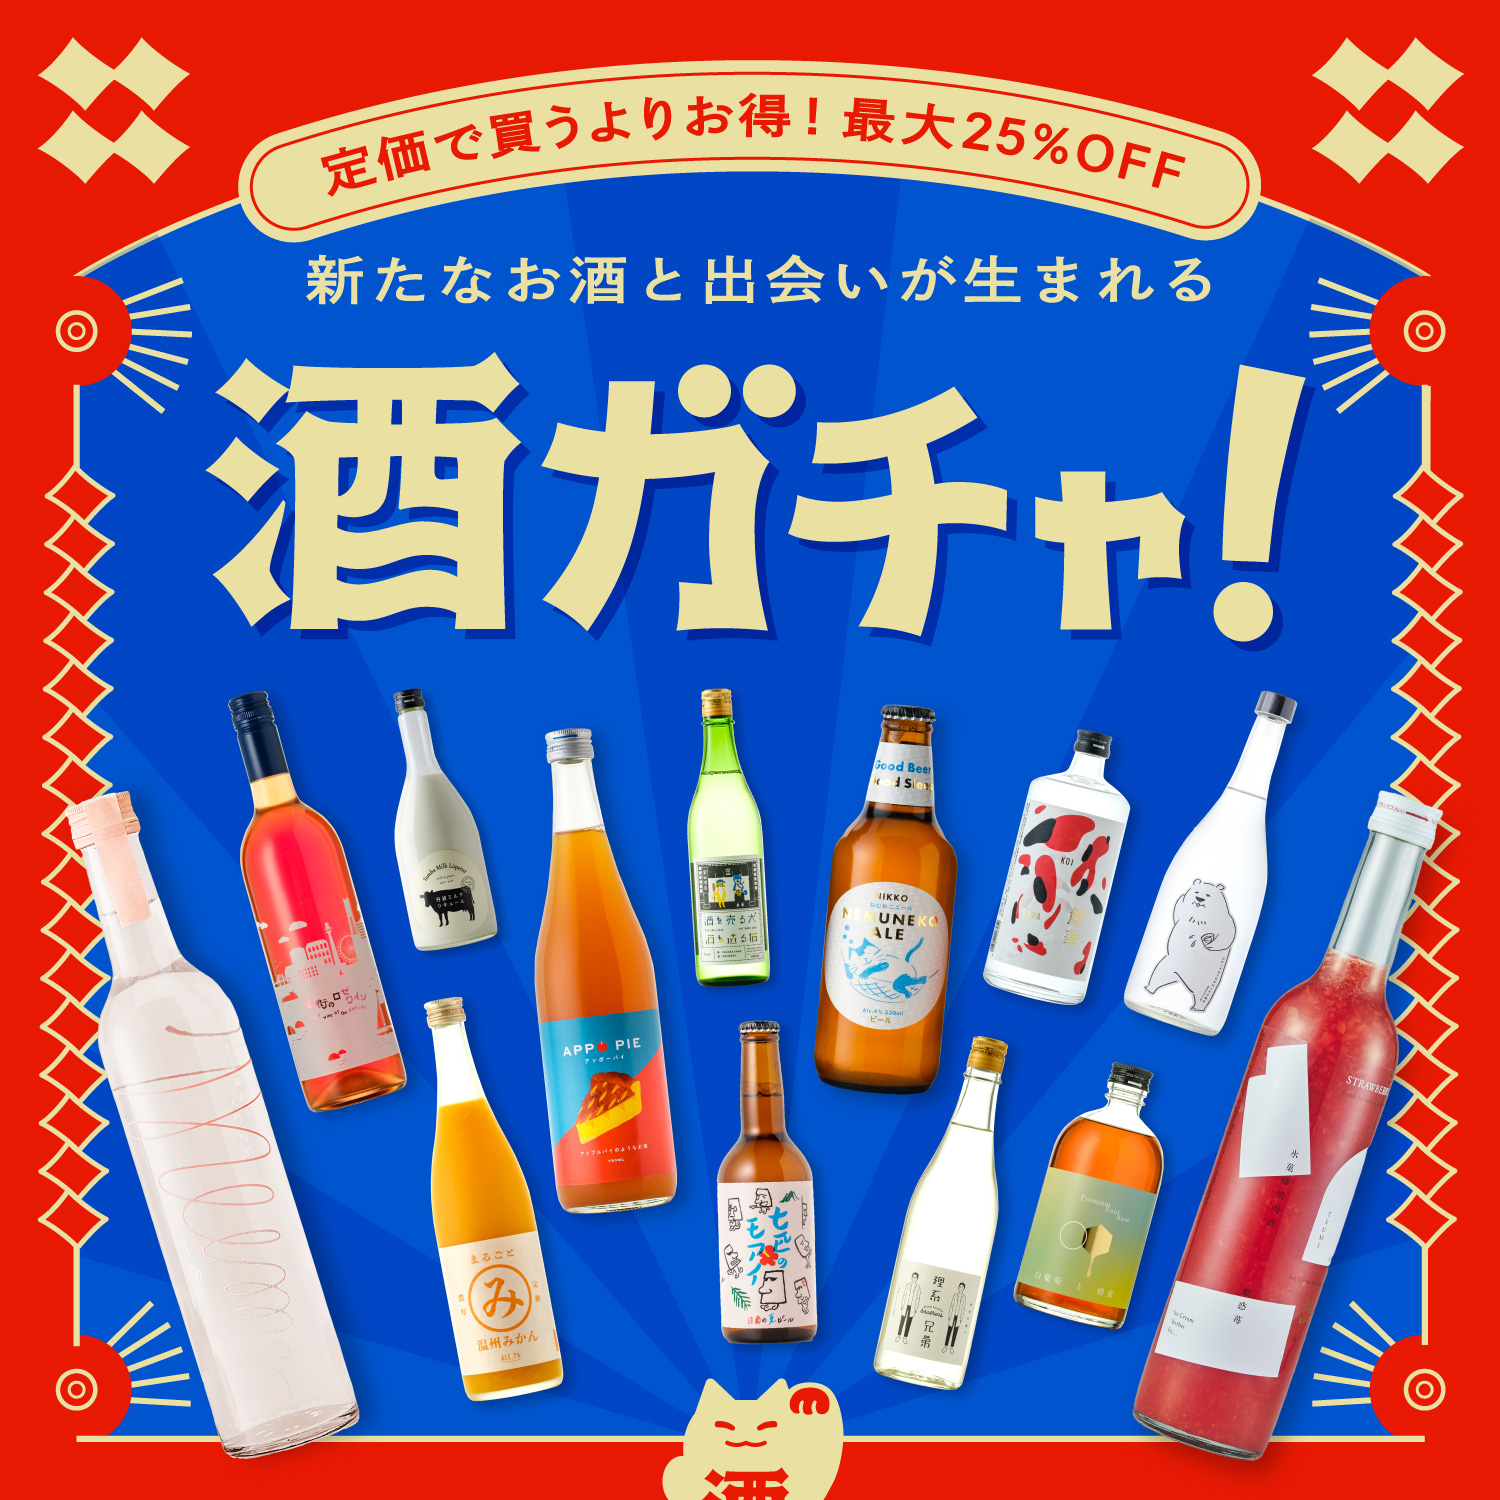 【4/26〜】有楽町マルイにて、SNSで話題の「酒ガチャ」がリアルに体験できるポップアップストアがOPEN